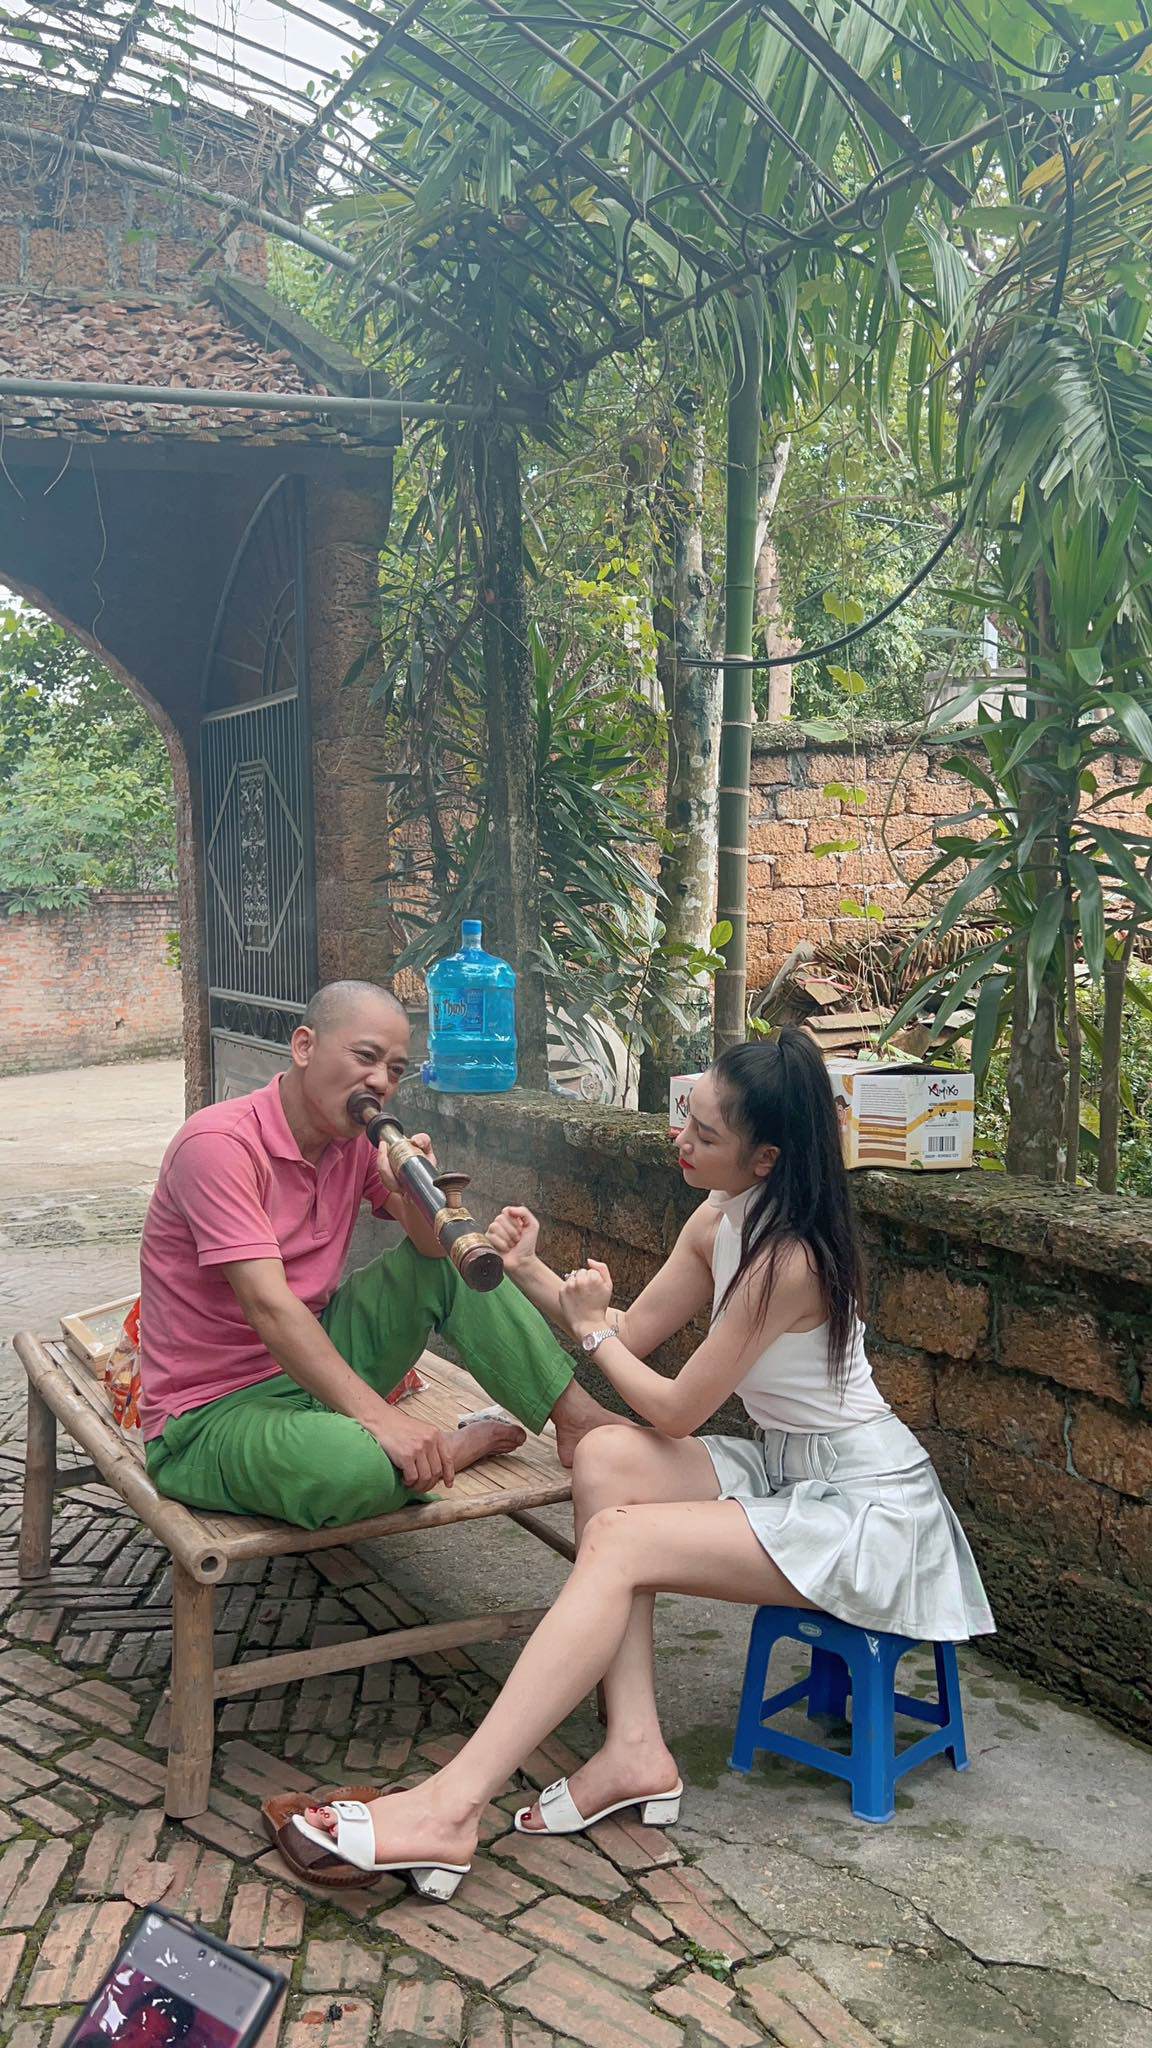 Hình ảnh hậu trường series phim "Vợ chồng Đoành" được Thanh Hằng chia sẻ trên trang cá nhân.